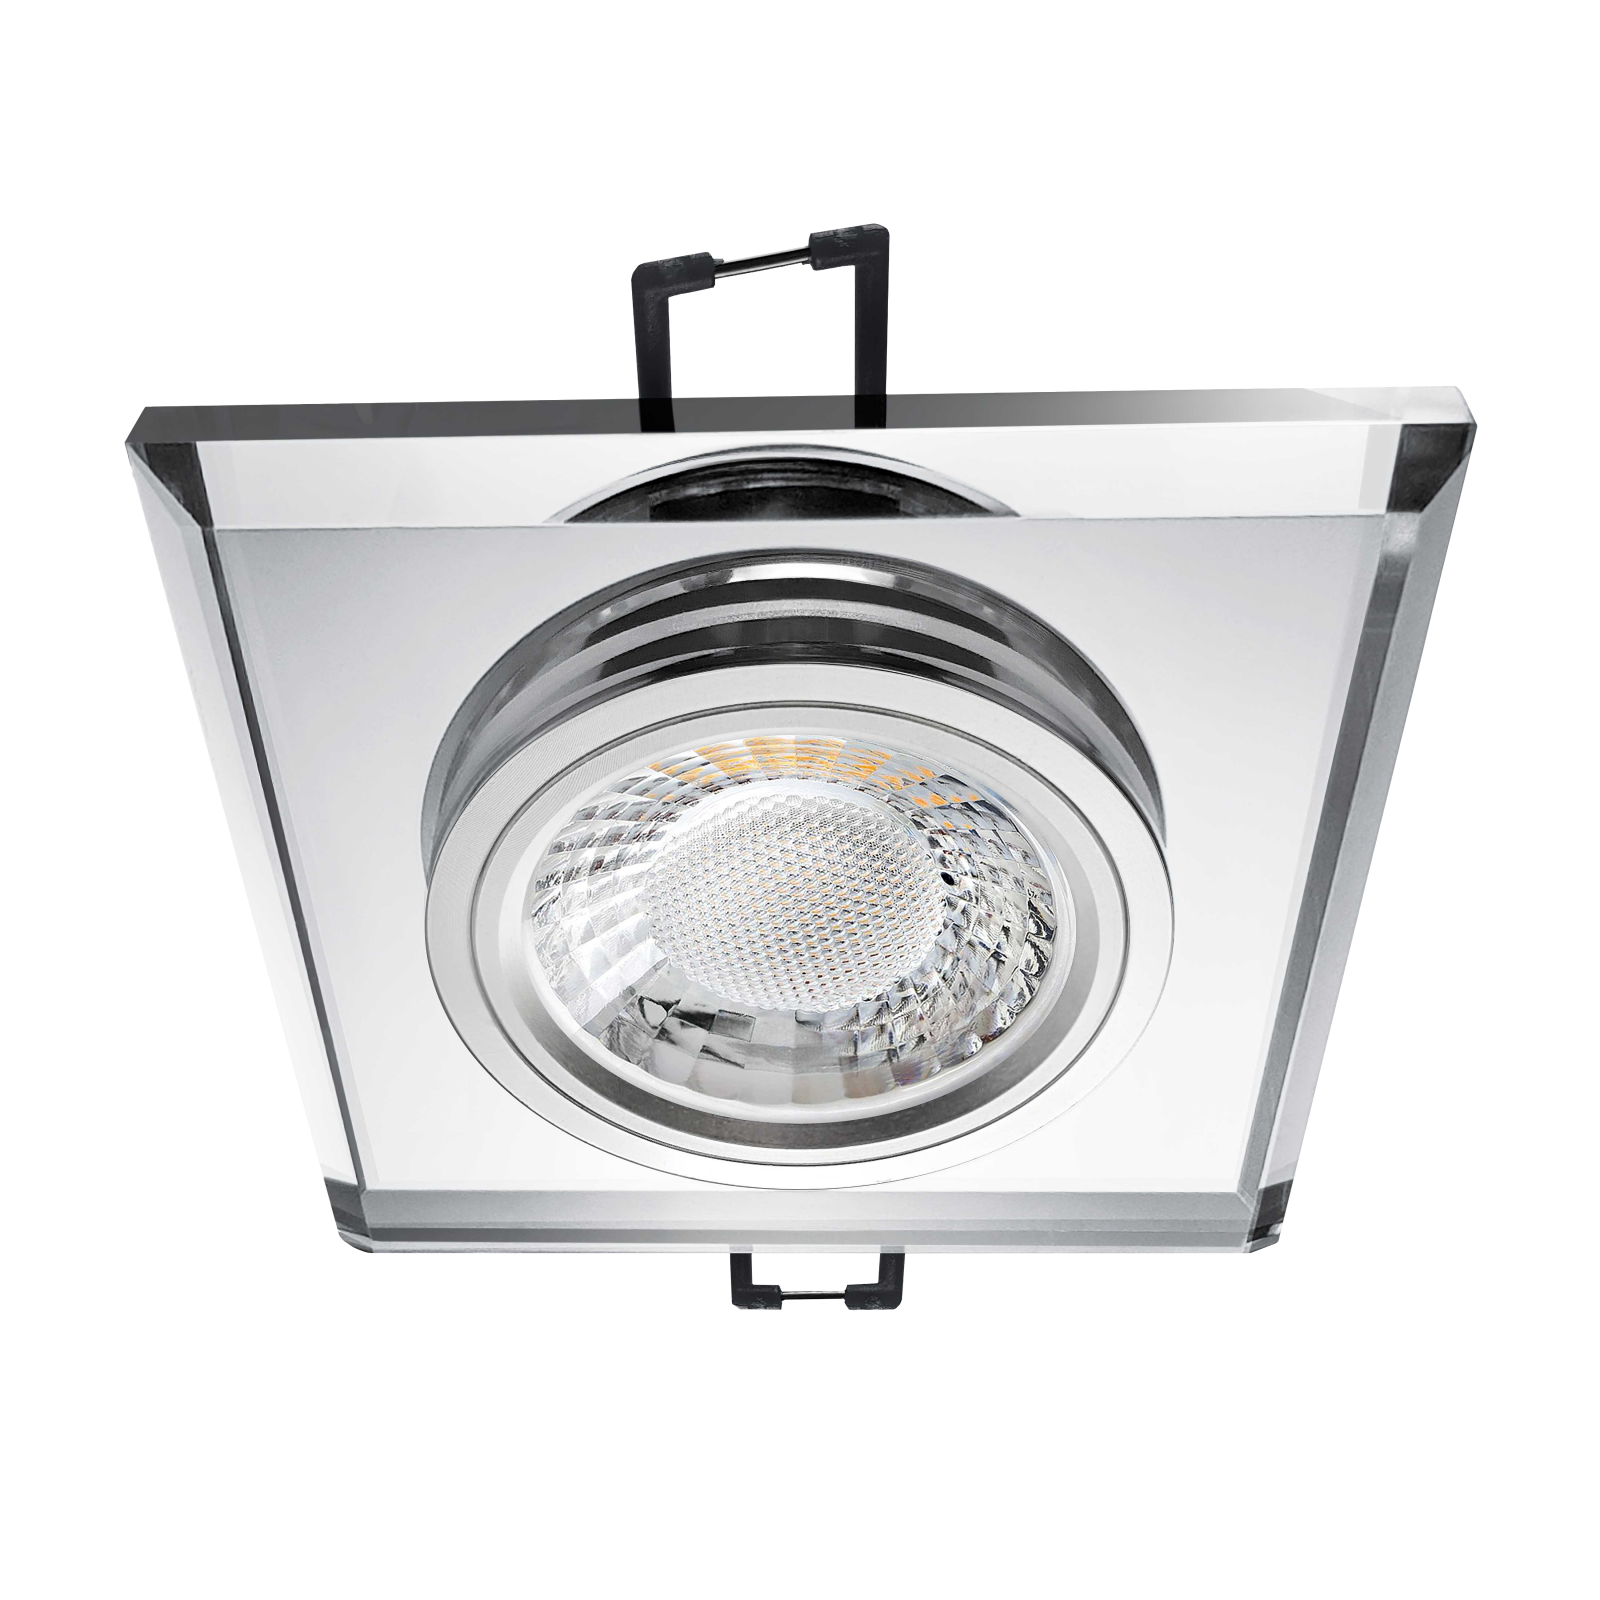 LED Einbaustrahler spiegelnd | Quadratischer Einbauspot Echtglas | Lochmaß Ø 68mm - 80mm | Einbautiefe 64mm | Anschlussfertig mit GU10 230V Fassung 